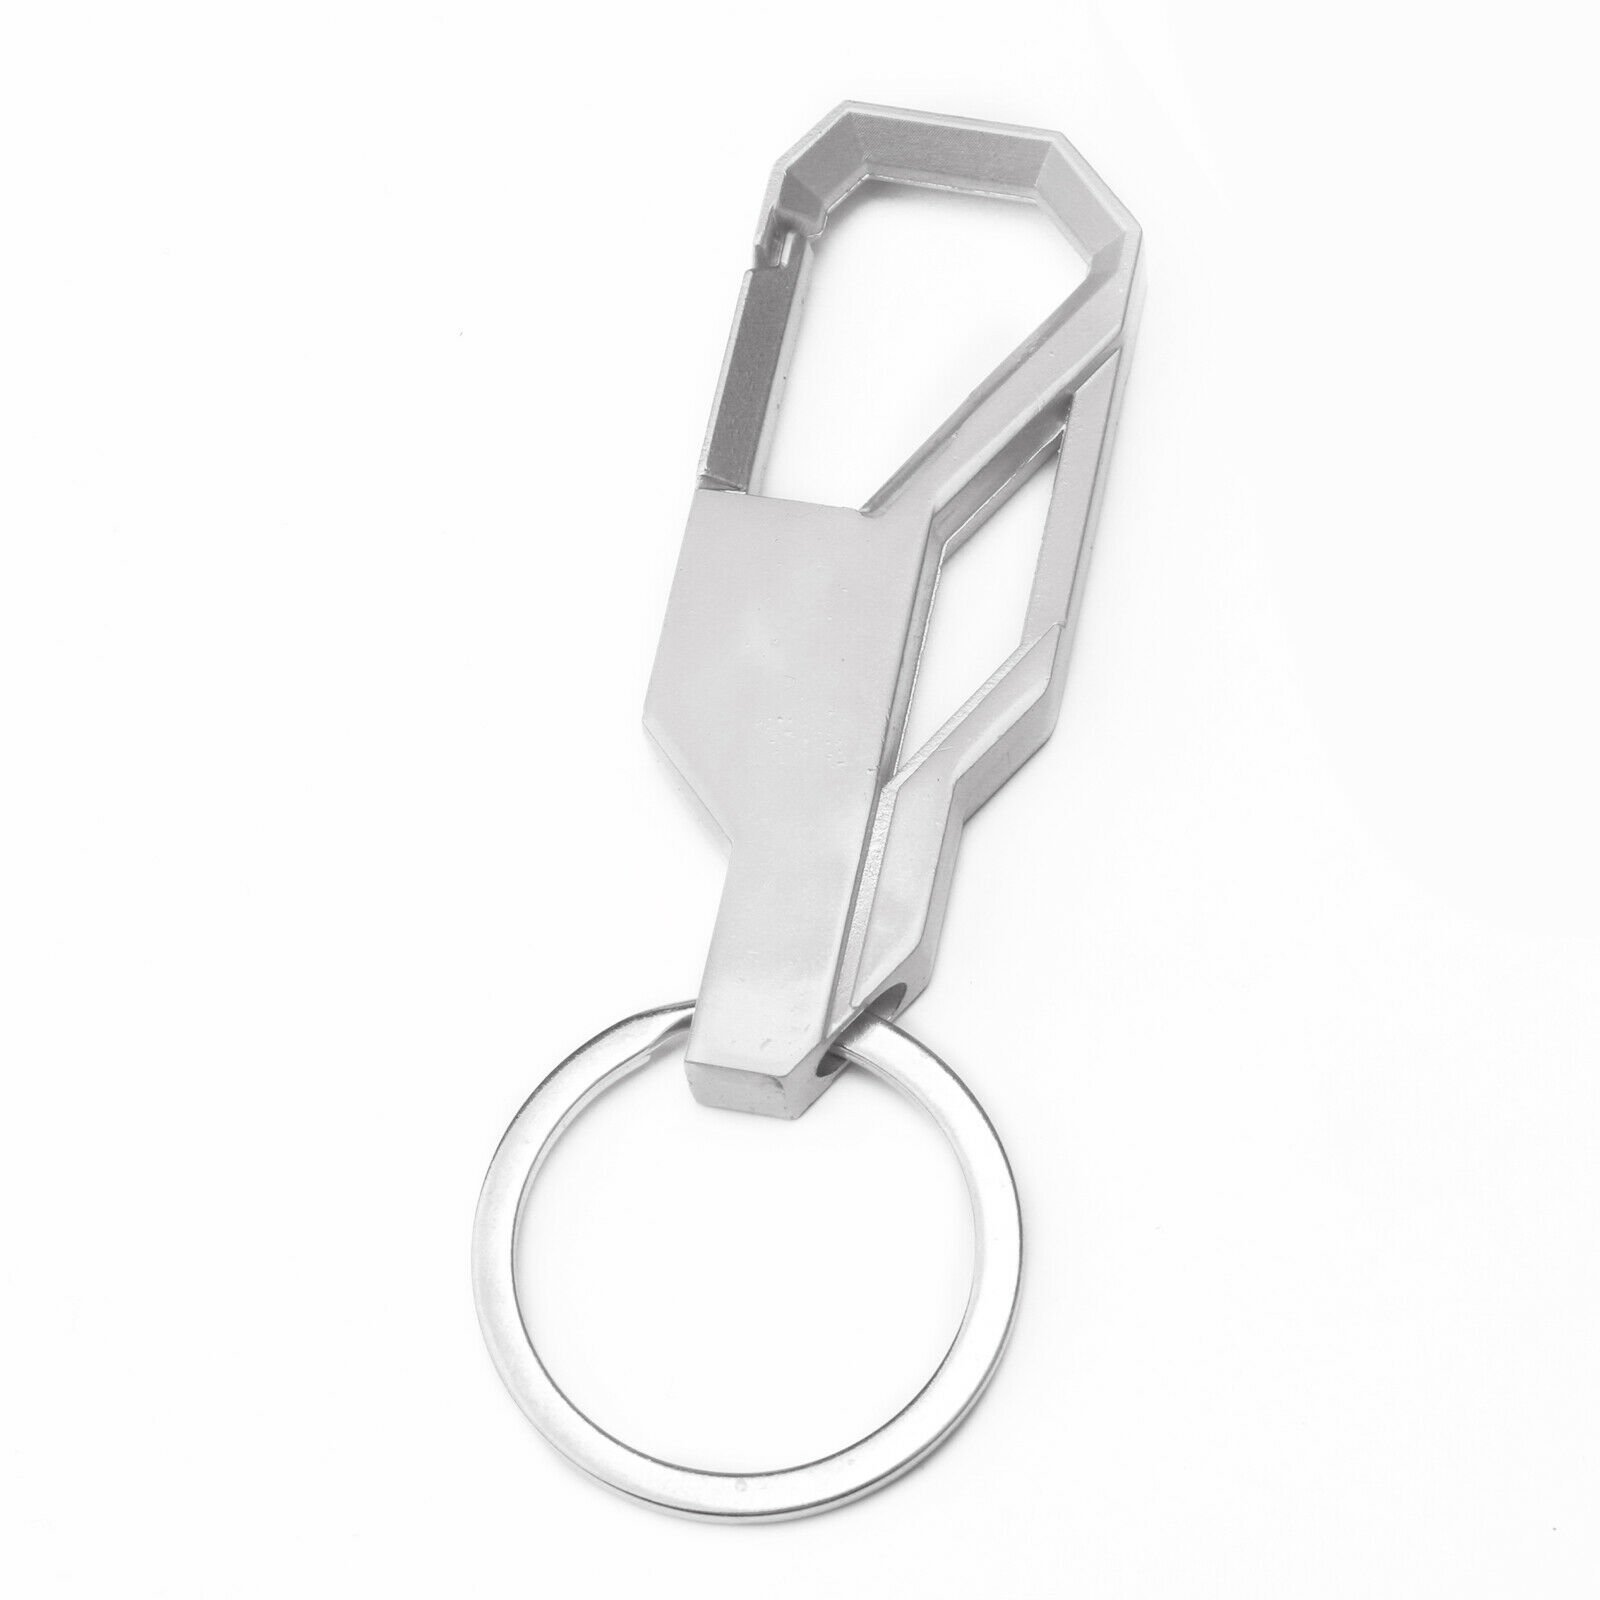 Metal Mens Creative Alloy Keyfob Gift Car Keyring Keychain Key Chain Ri vbn